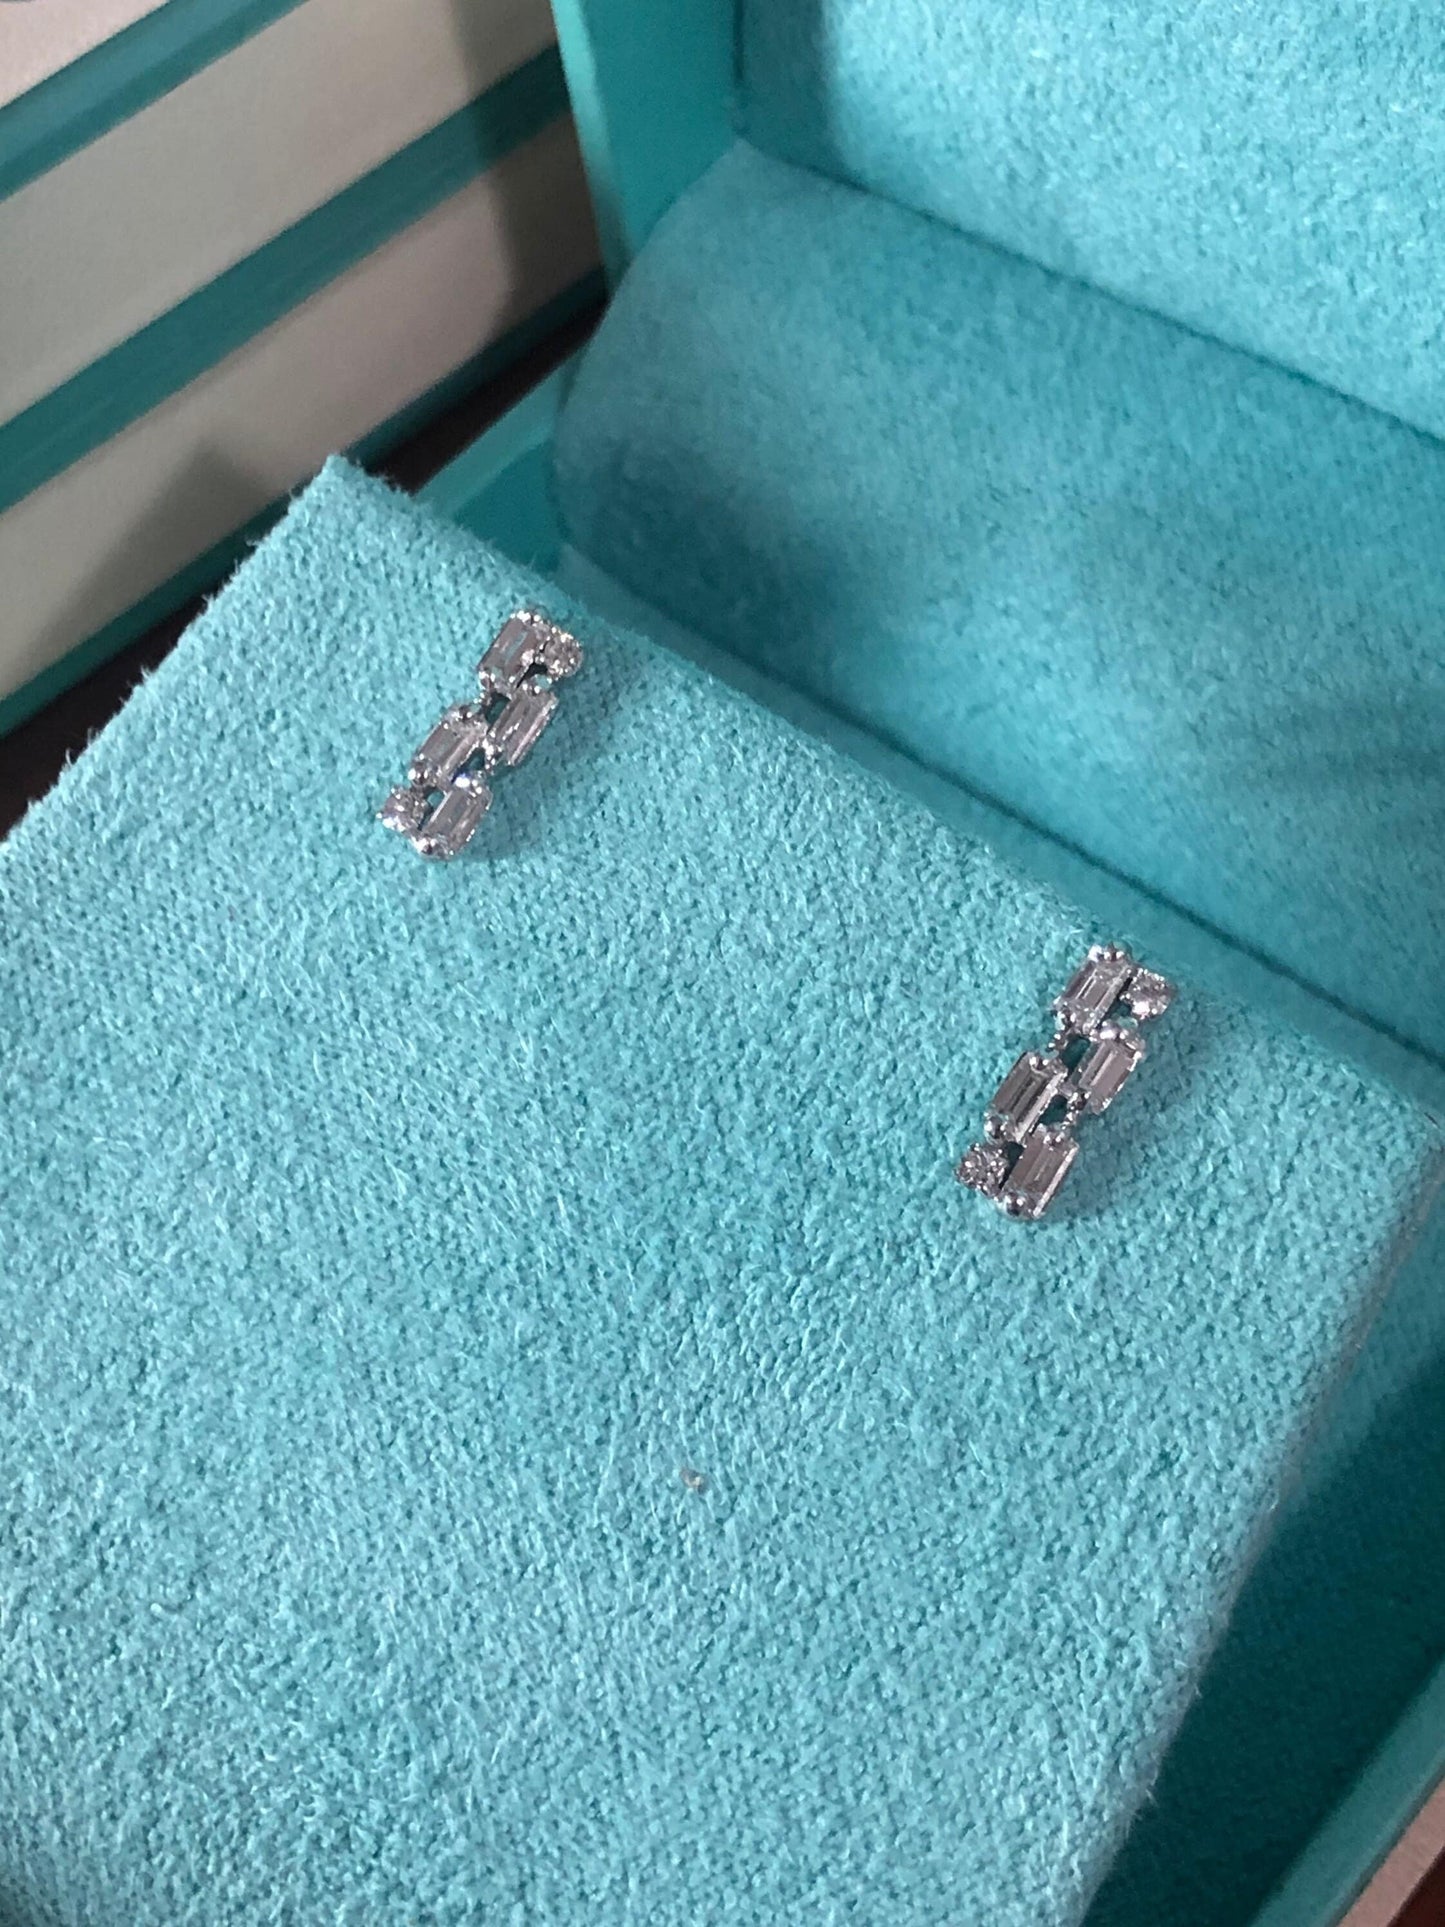 Diamond Earrings, 14kt Solid Gold Stud Earrings, Baguette and Round Diamond Earrings, Dainty Earrings, Minimalist earrings, Cluster Earrings